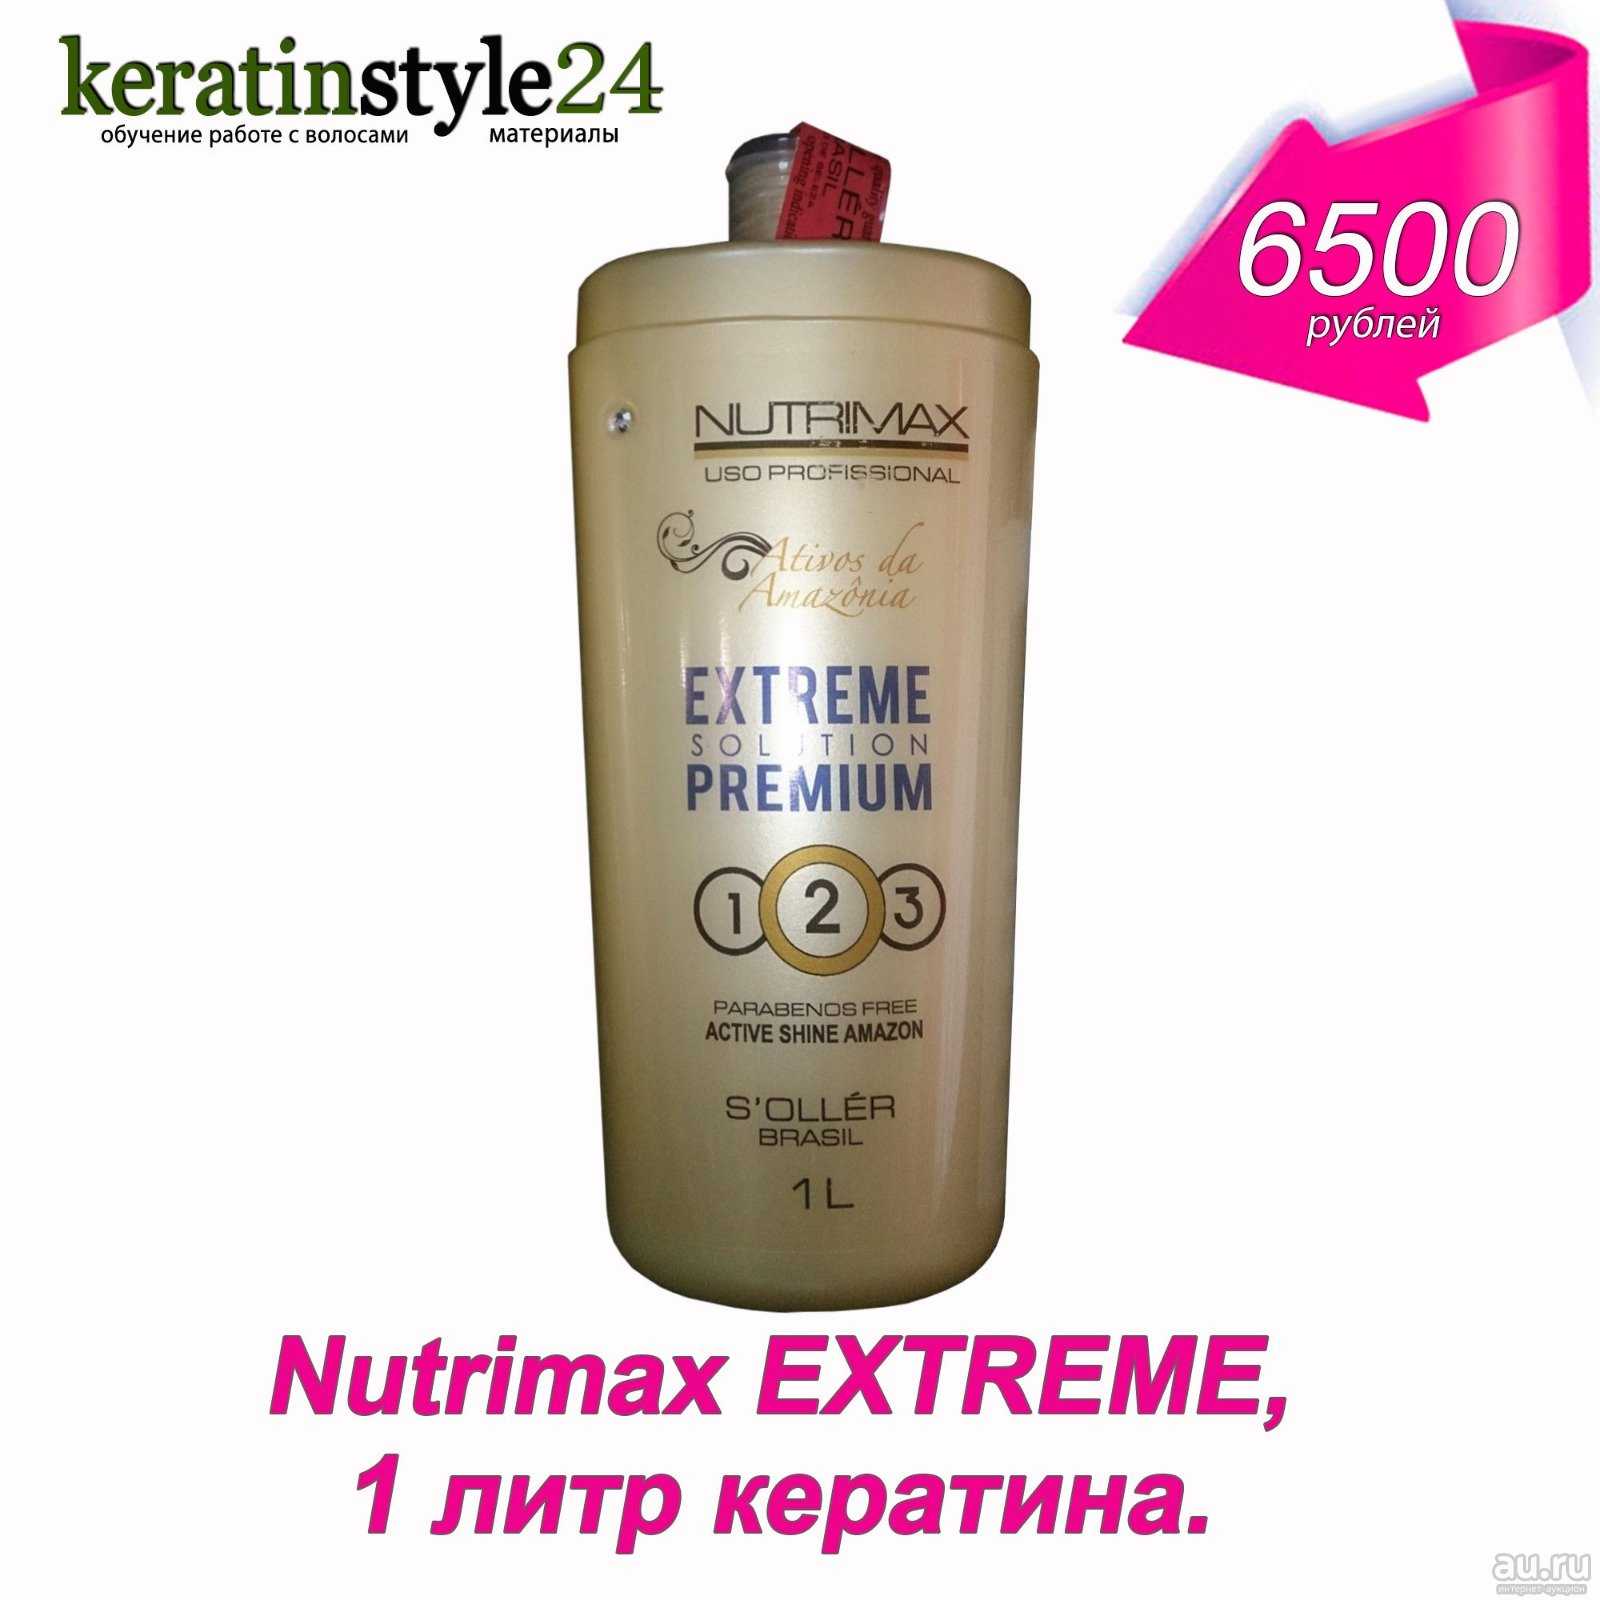 Nutrimax extreme solution premium